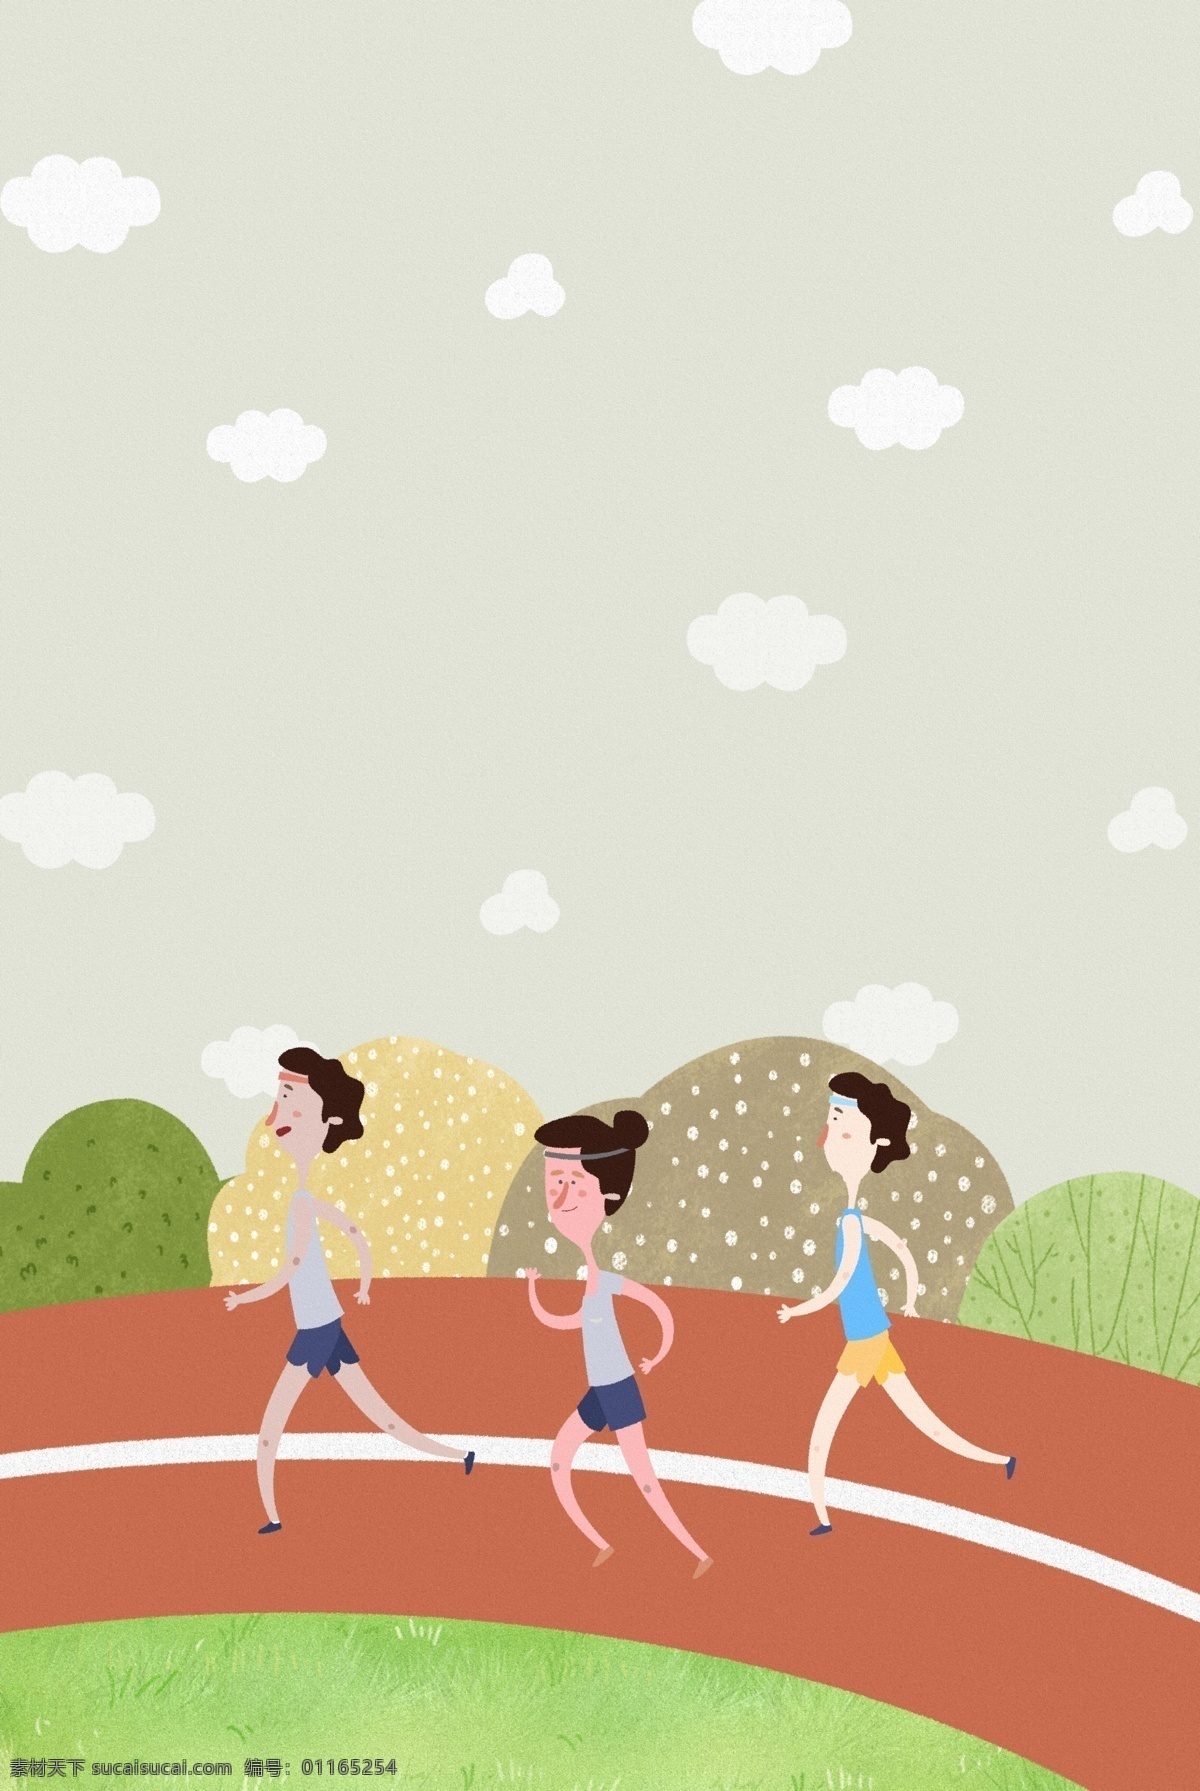 卡通 手绘 秋季 运动会 跑步 比赛 插画 海报 背景 运动员 操场 云朵 植物 草坪 矢量